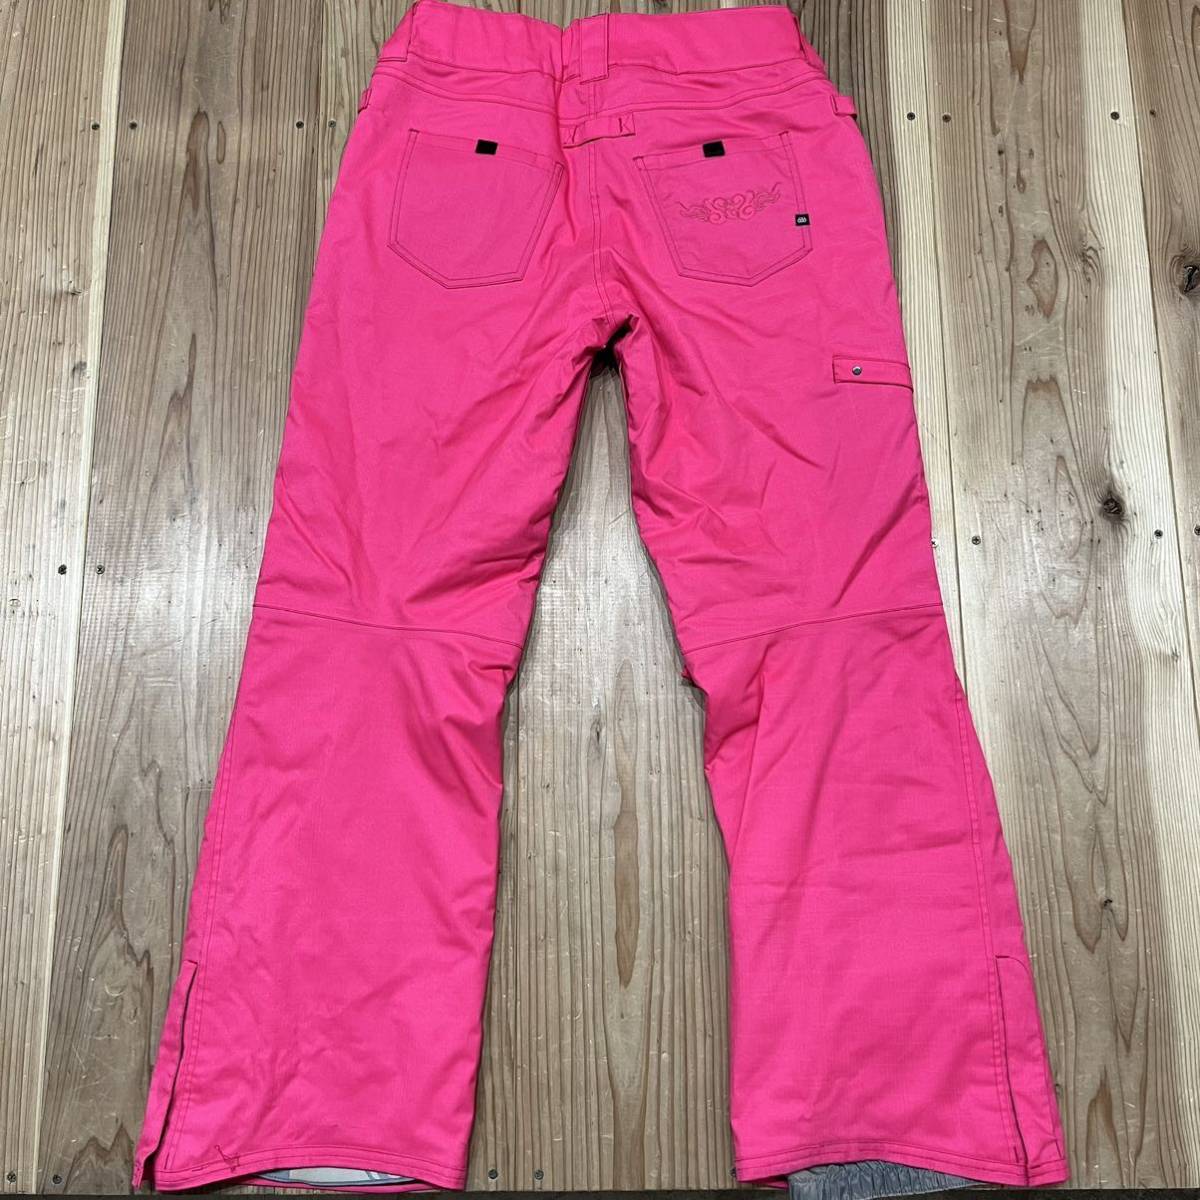 686 シックスエイトシックス スノーボードウェア パンツ スキーウェア pants ズボン women's レディース ピンク サイズL 玉mc2521_画像8